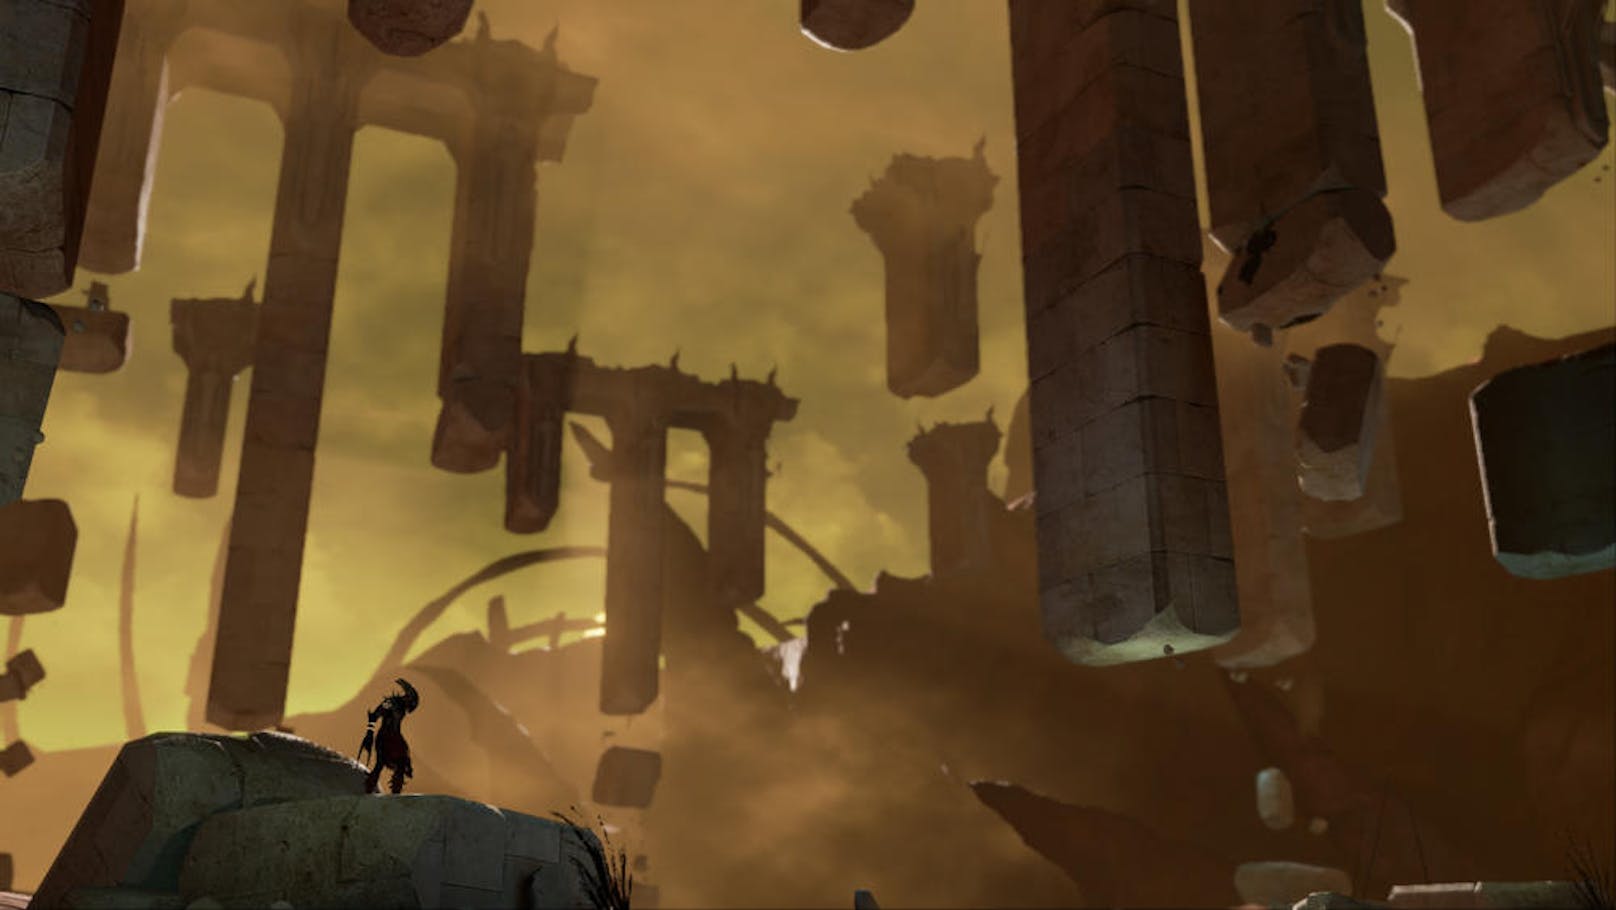 Shadow of the Beast ist auch als Neuauflage ein altmodisches Spiel, das mit simpler Action und tollen Landschaften in einer fantastischen Welt überzeugt.